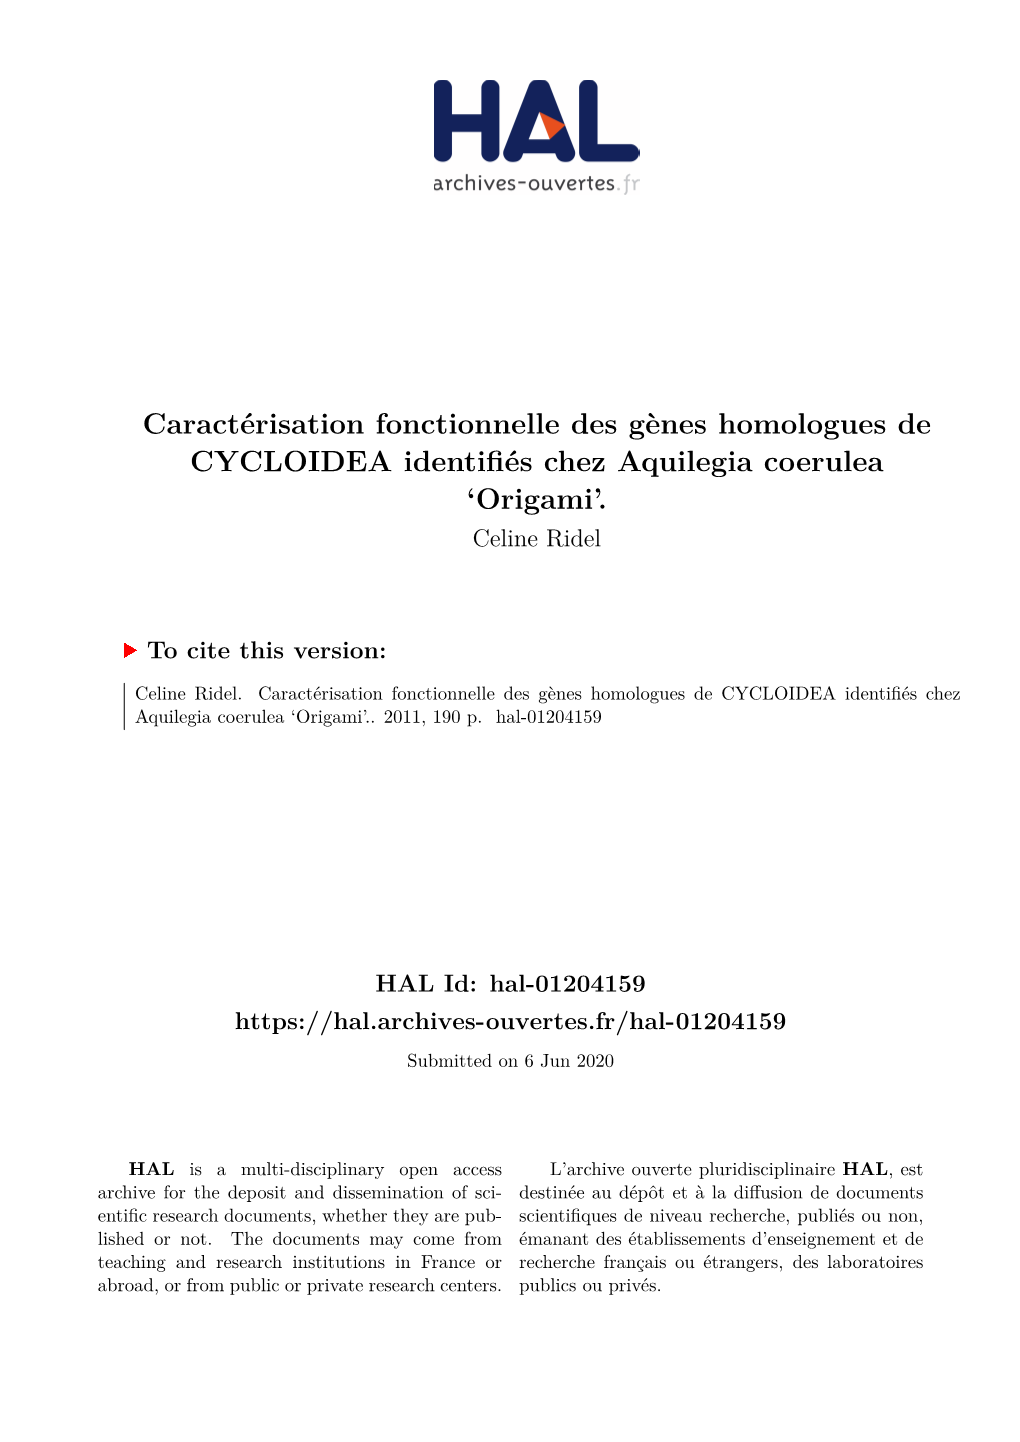 Caractérisation Fonctionnelle Des Gènes Homologues De CYCLOIDEA Identifiés Chez Aquilegia Coerulea ‘Origami’